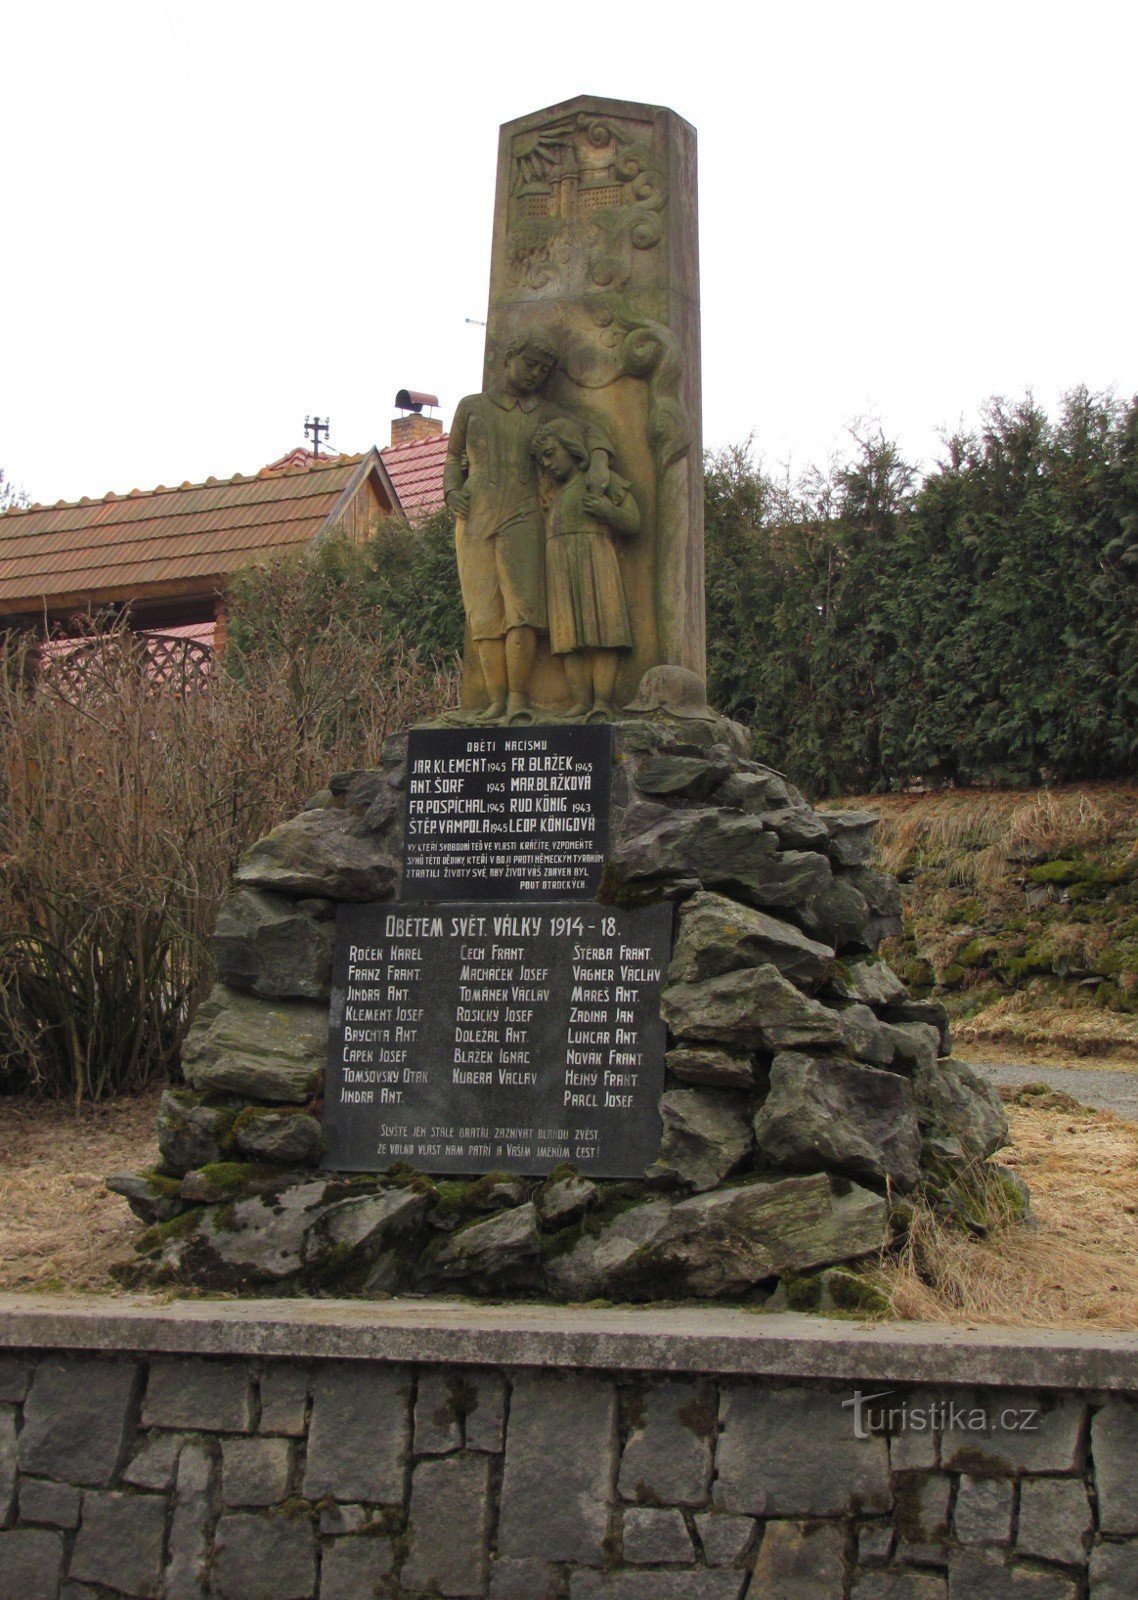 Az első világháború áldozatainak emlékműve